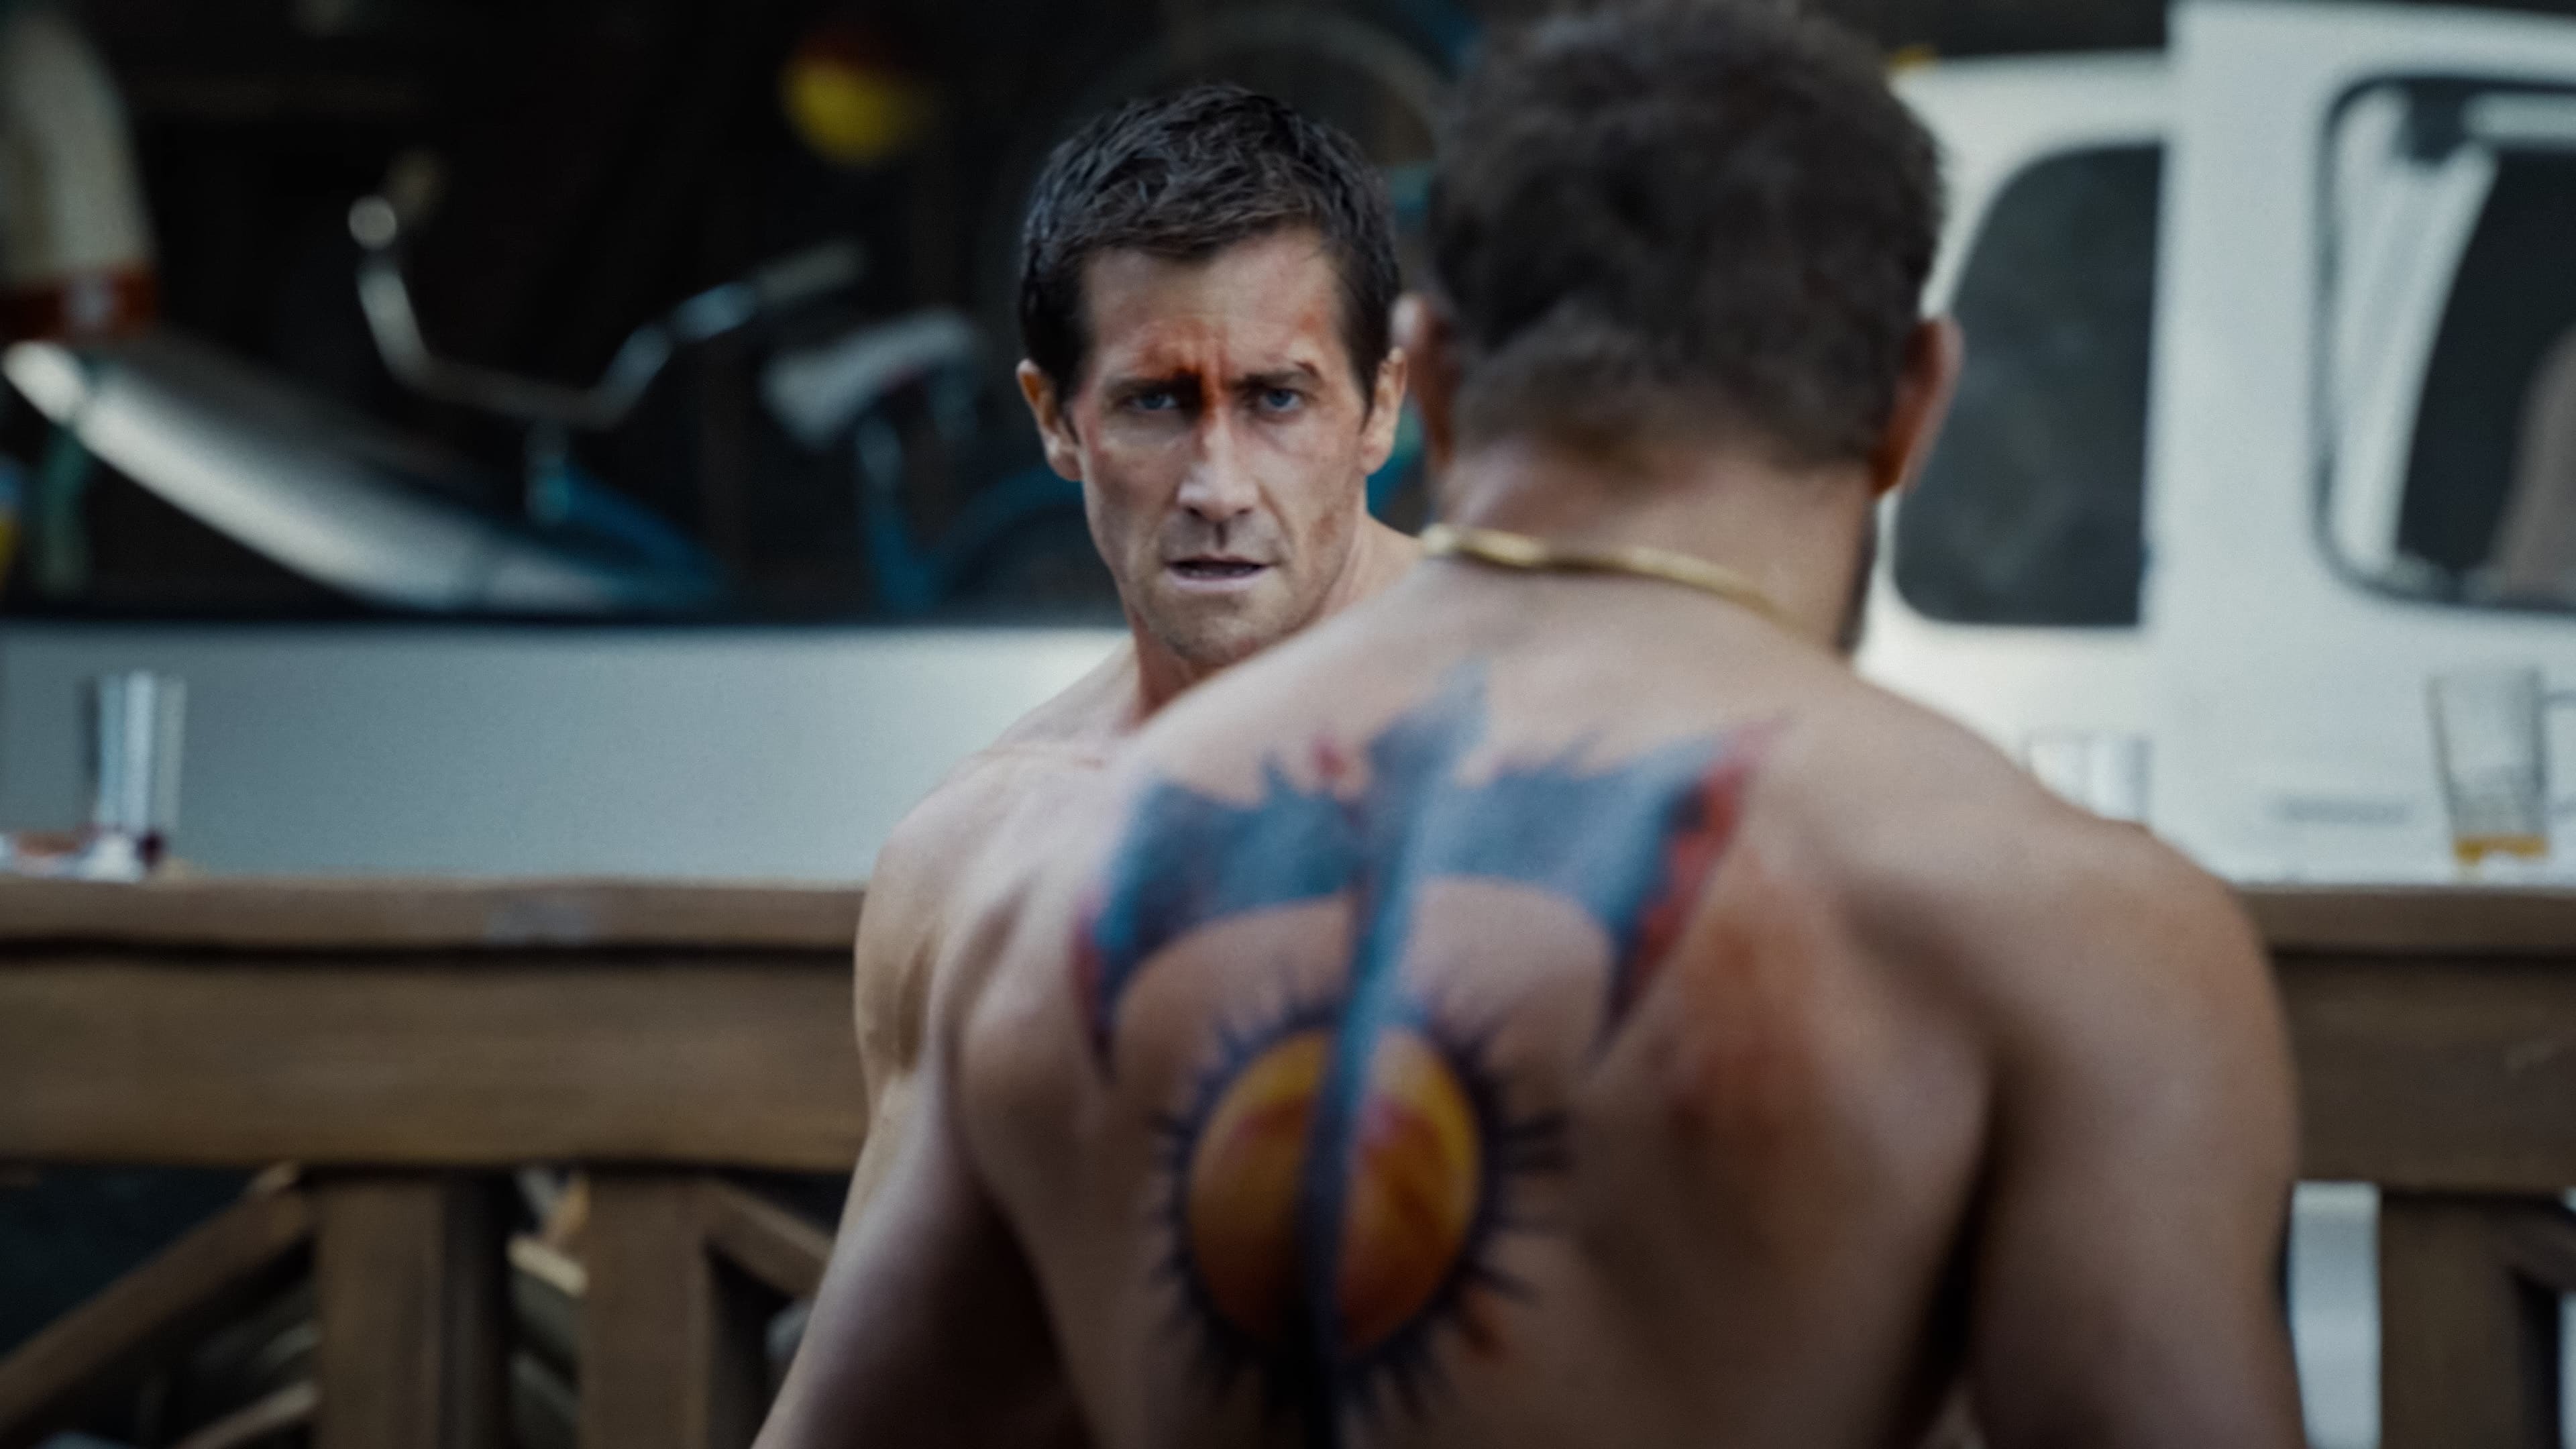 "Mon bras entier a enflé" : cette vilaine blessure de Jake Gyllenhaal sur le tournage de Road House